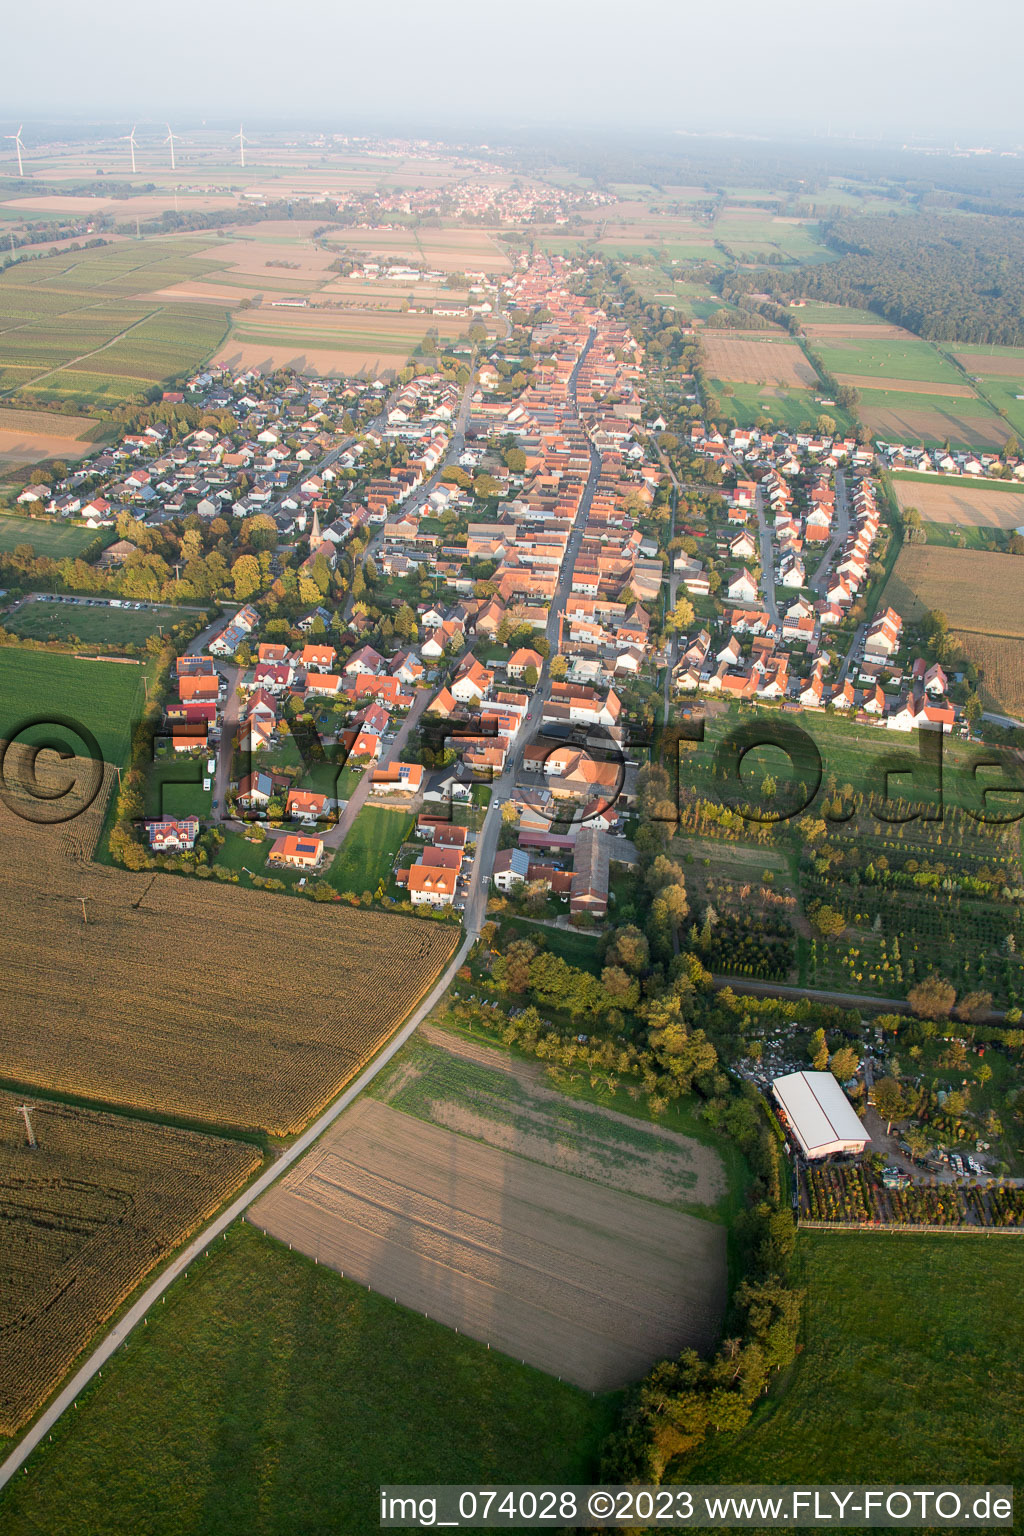 Freckenfeld dans le département Rhénanie-Palatinat, Allemagne depuis l'avion